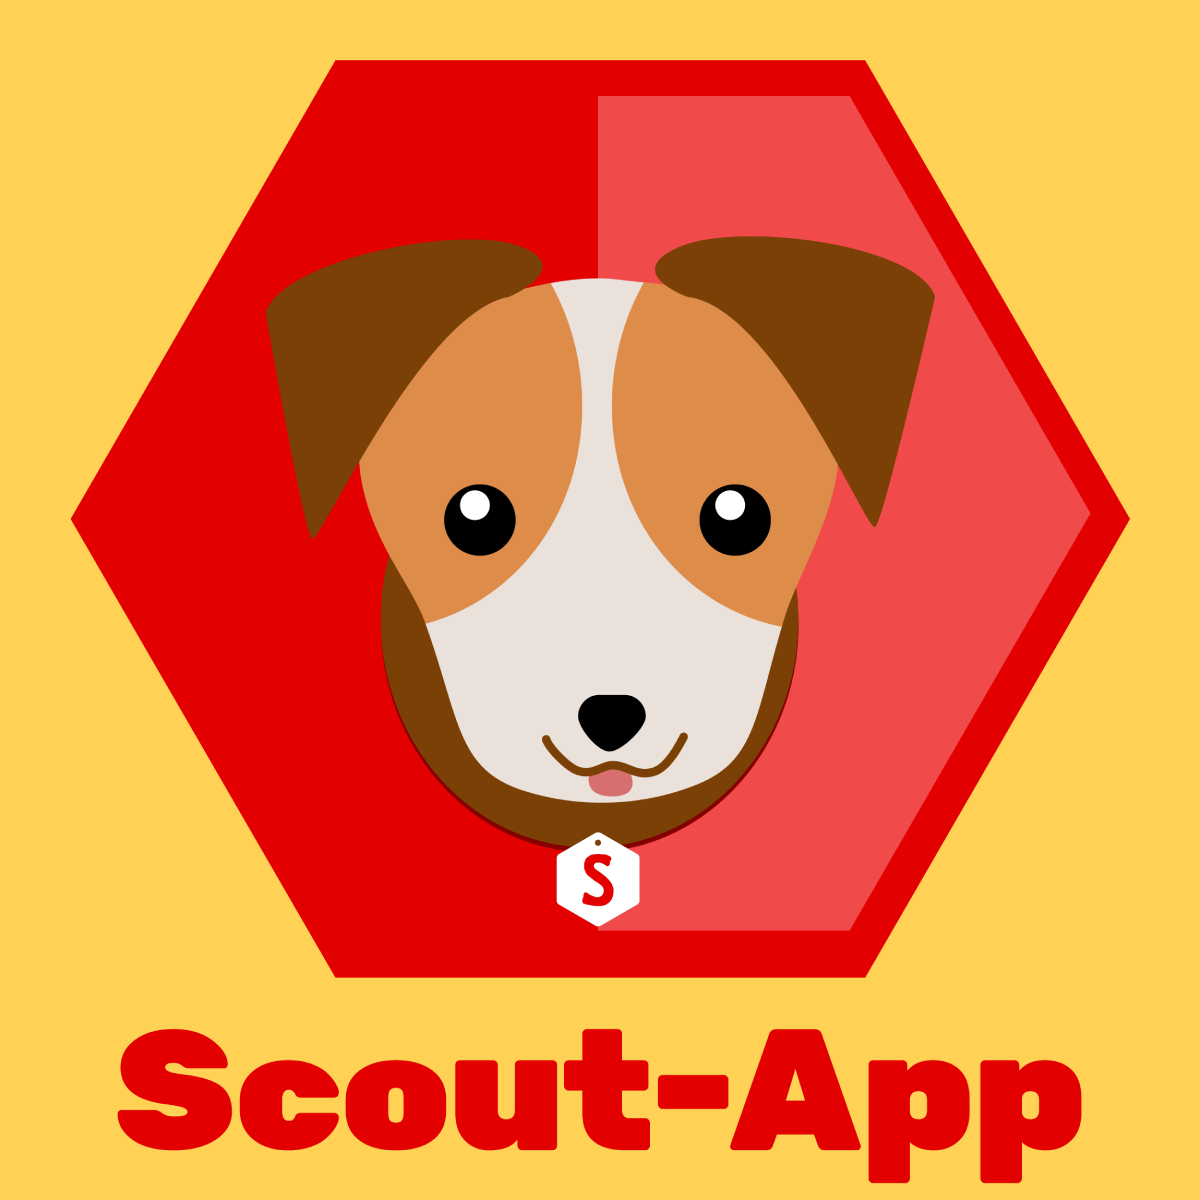 (c) Scout-app.io